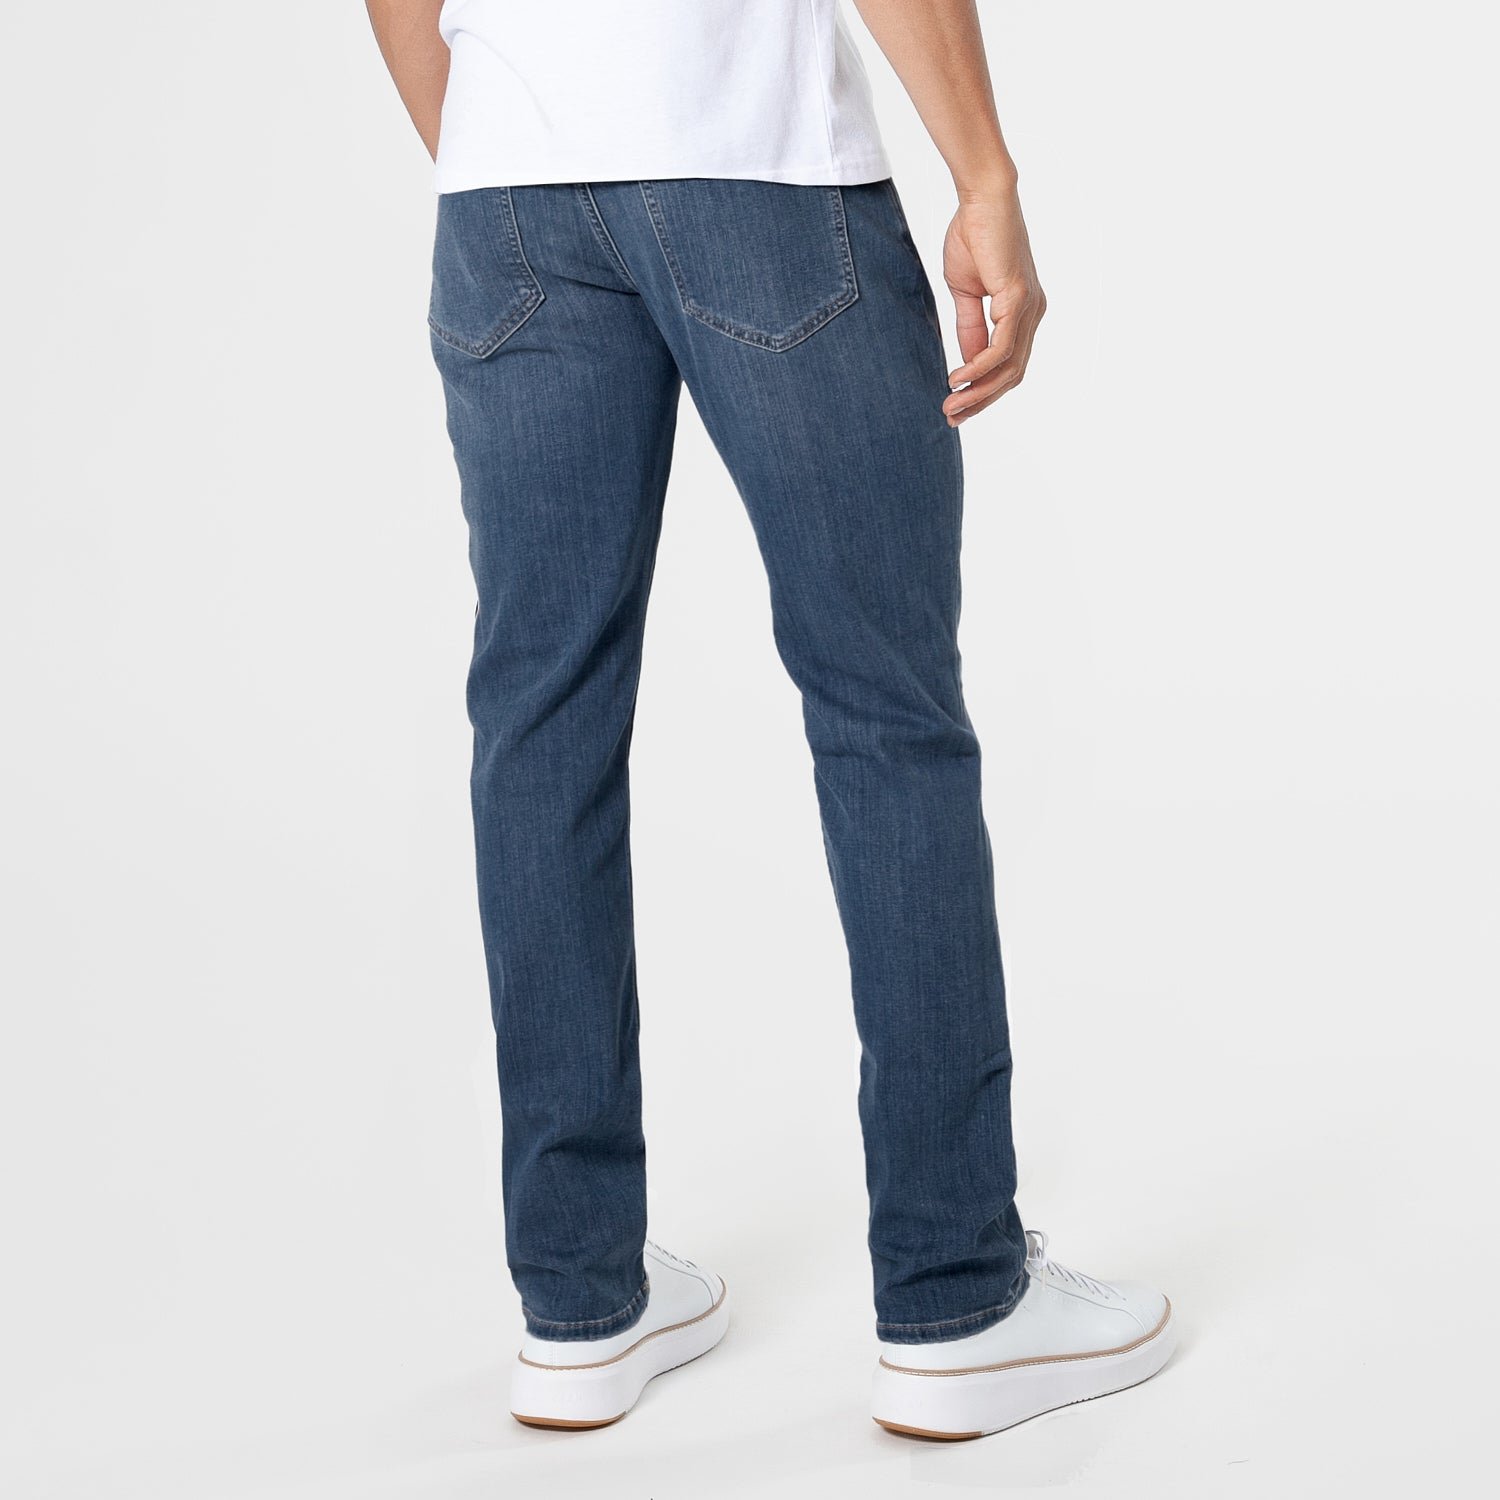 Medium Indigo Wash Slim Fit Comfort Jeans